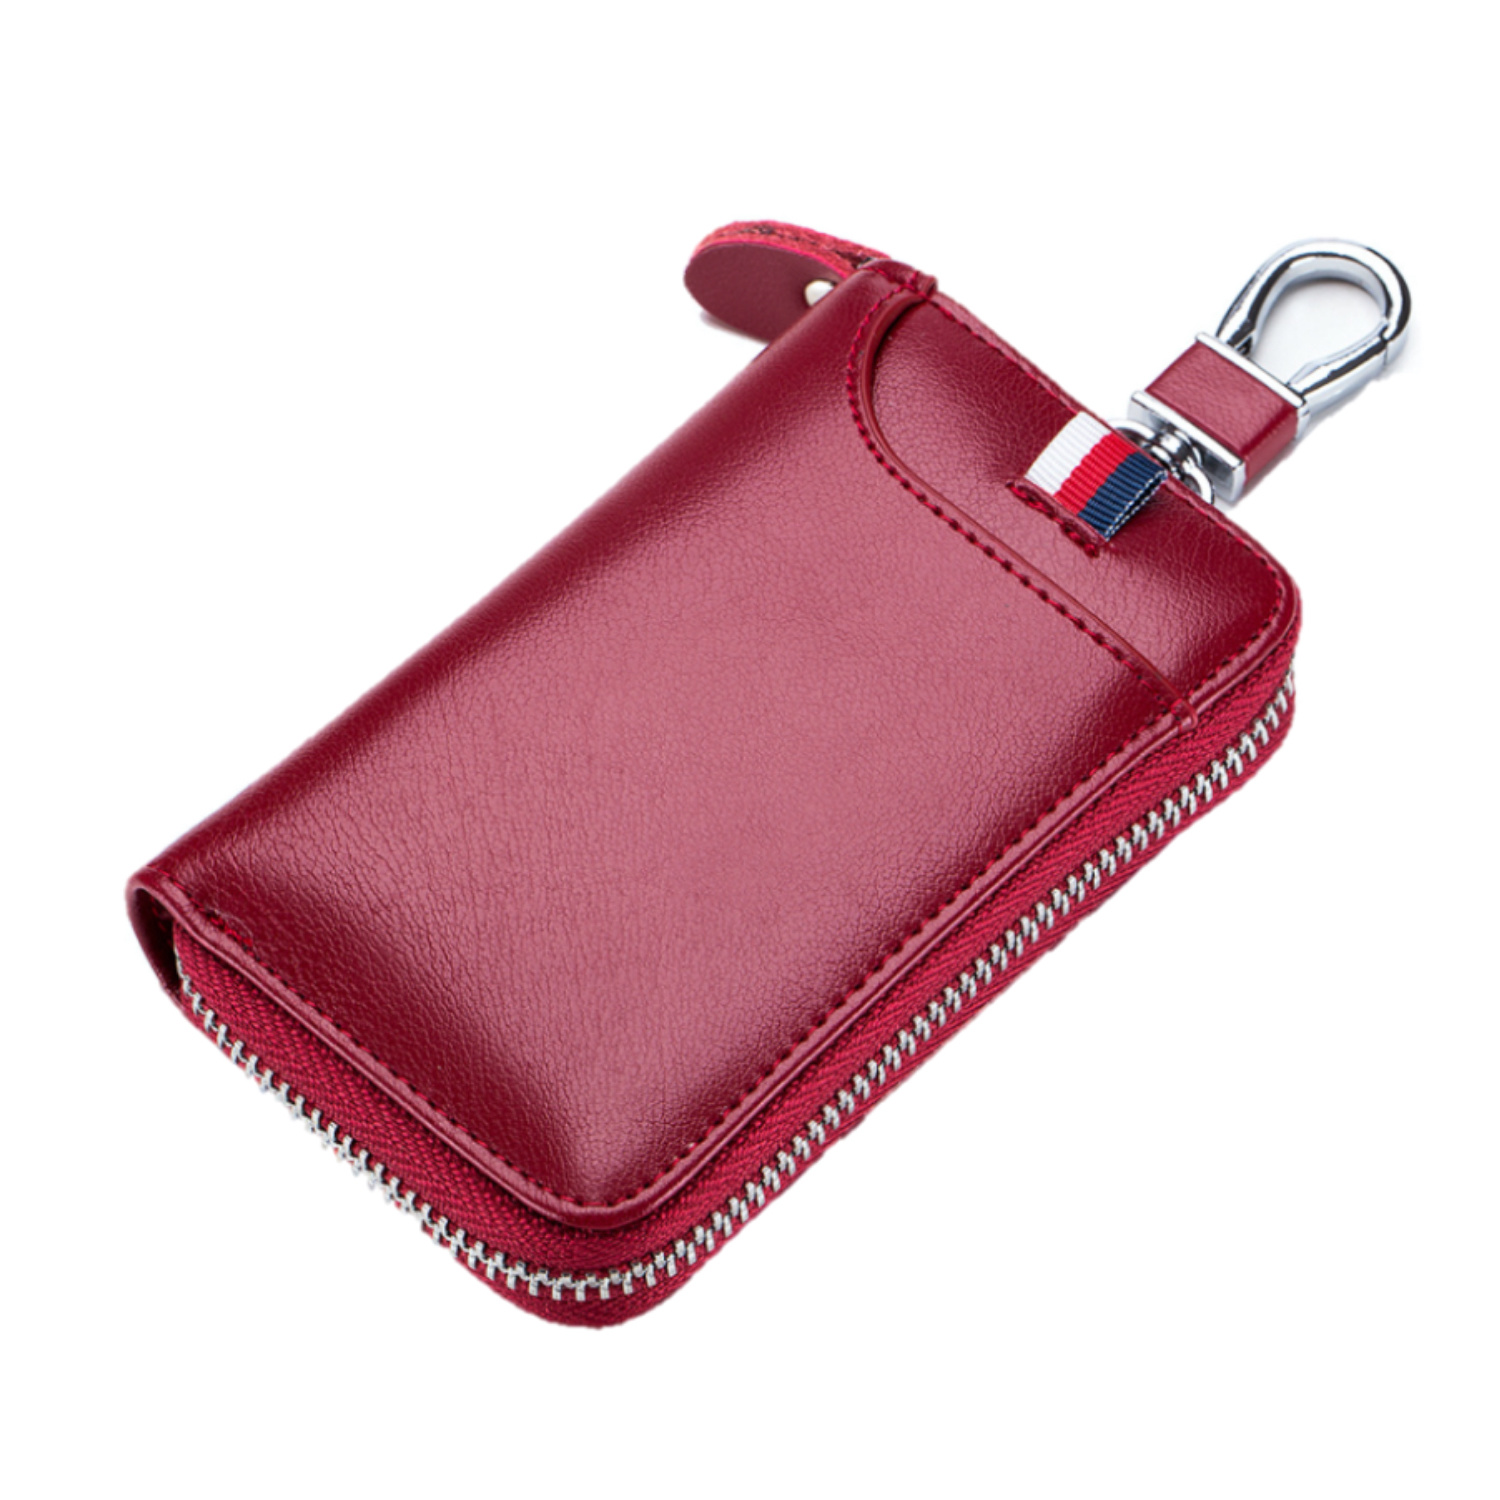 Leder-Schlüsseletui, 6 Schlüsselhaken, Kartenhalter, Geldschein-Brieftasche, Autoschlüsseltasche, Multifunktions-Schlüssel-Organizer - Rot-8